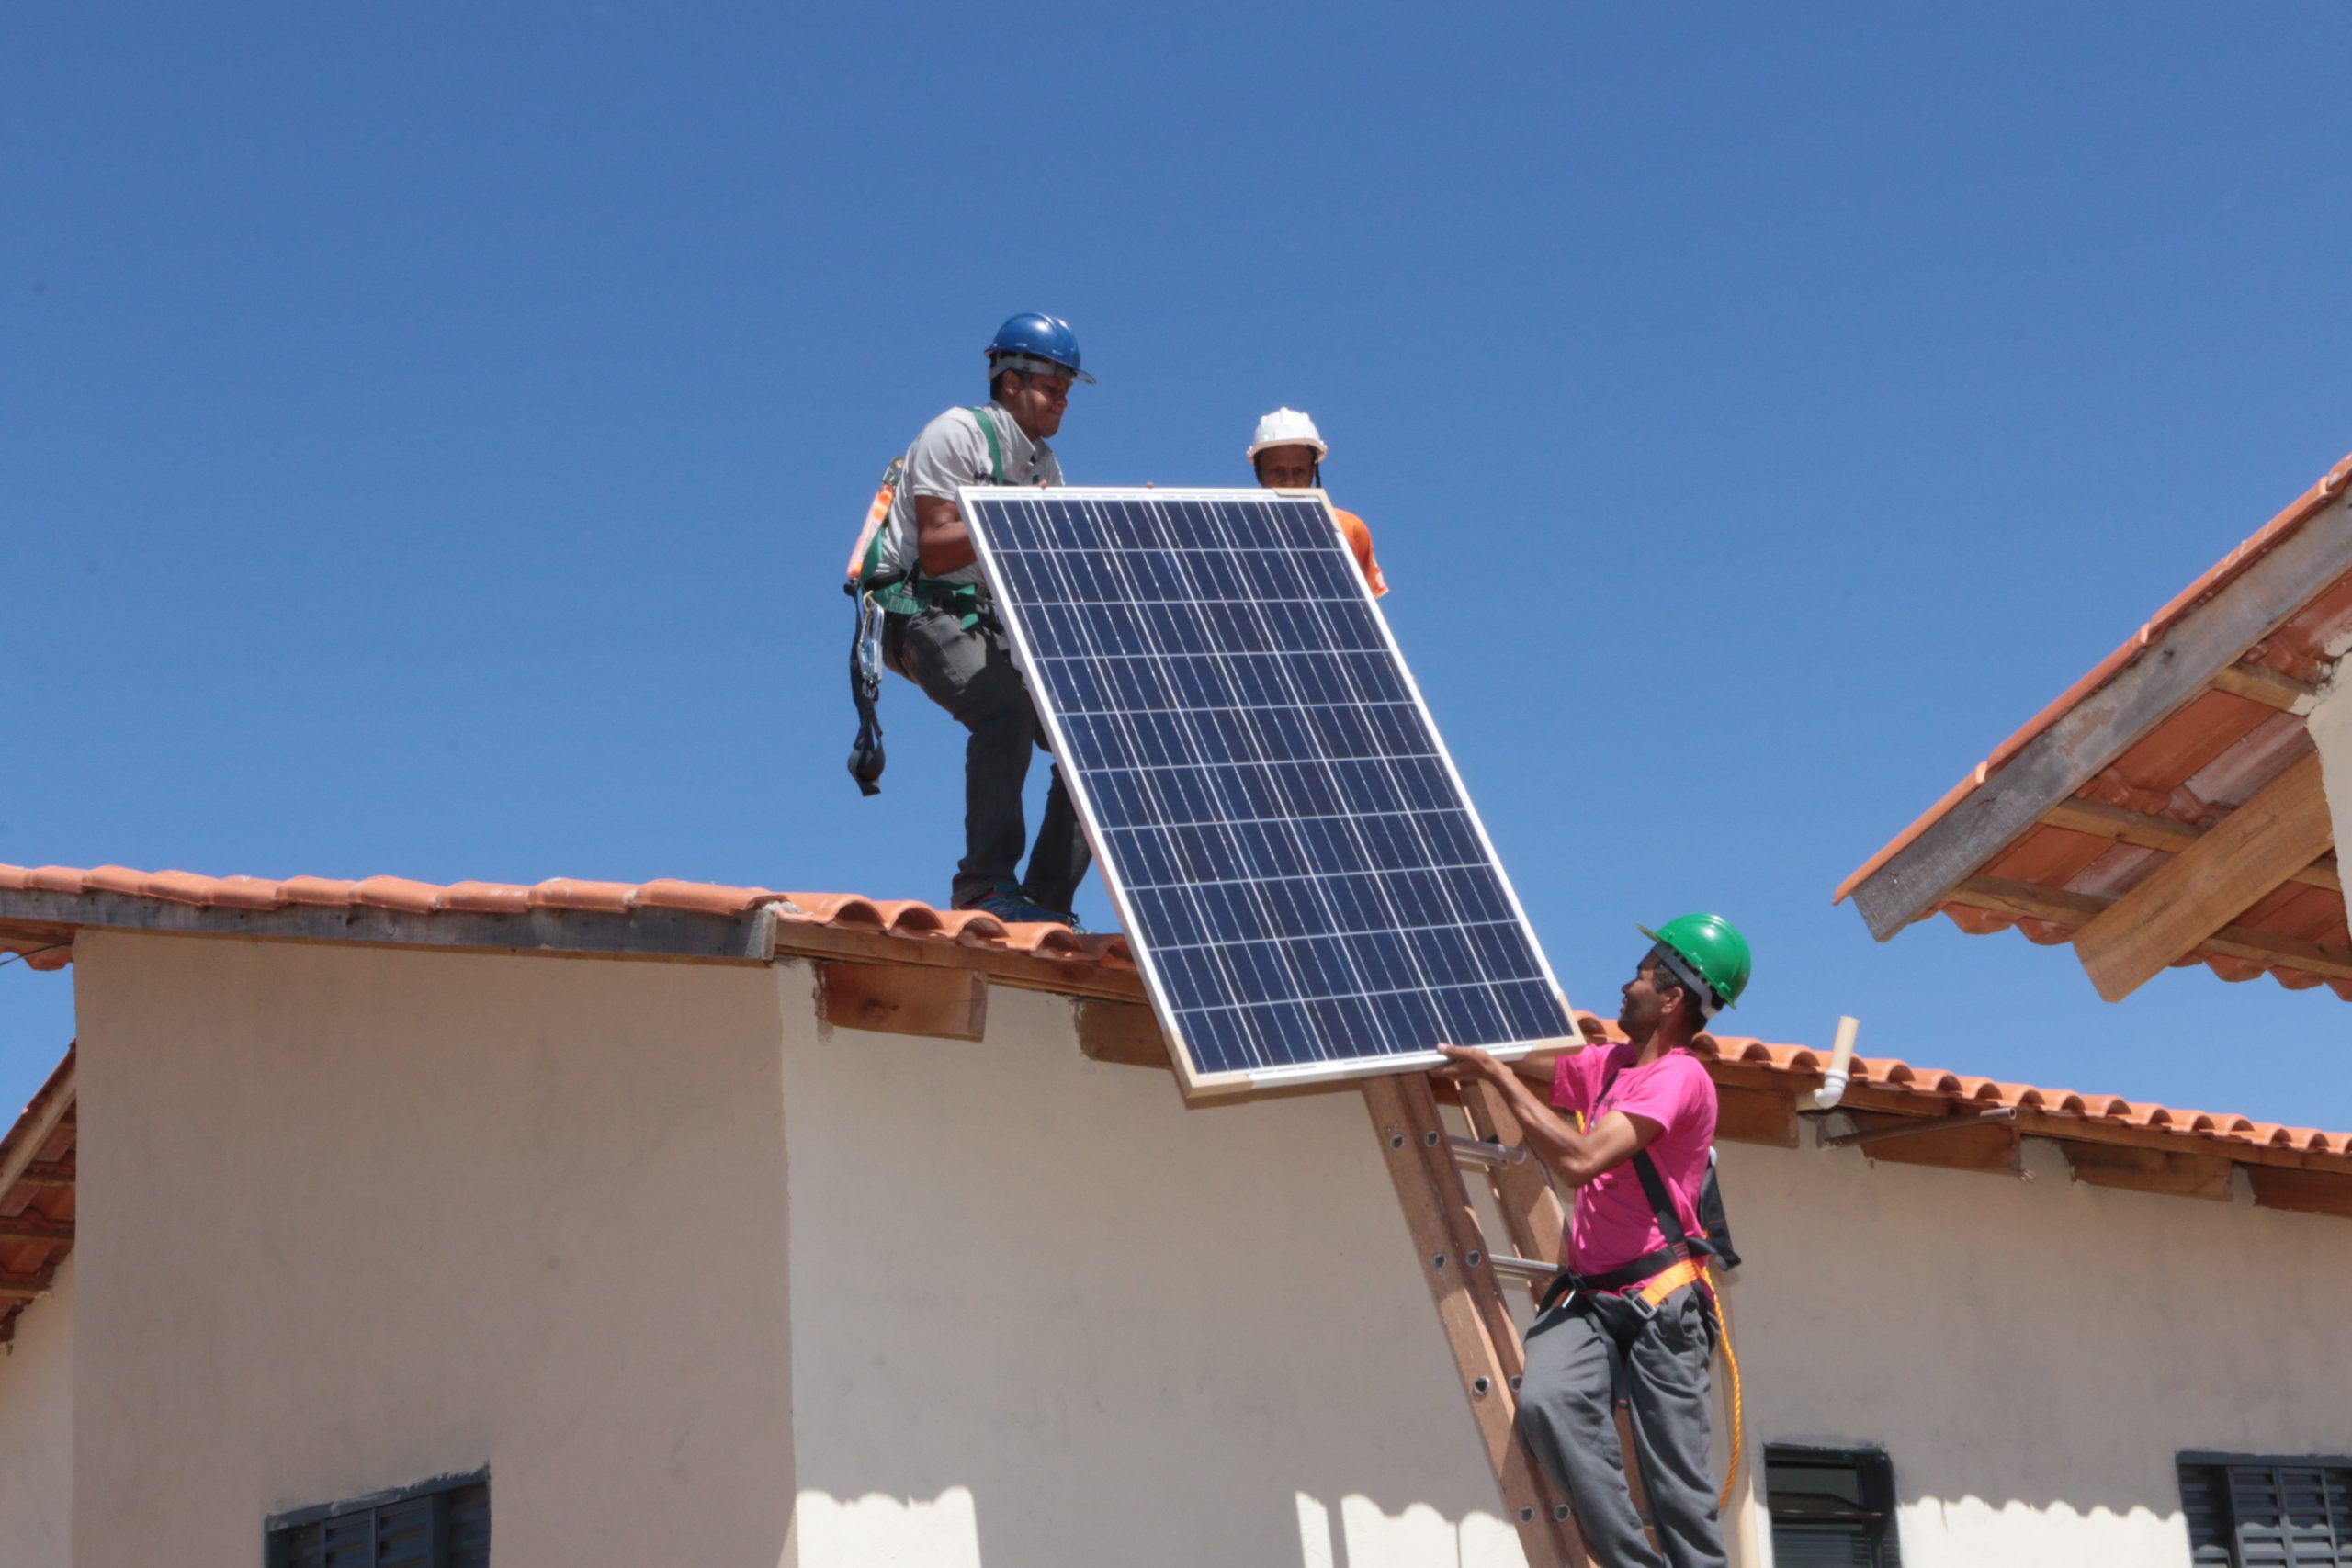 Banco do Nordeste apoia geração de energia solar em residências mineiras